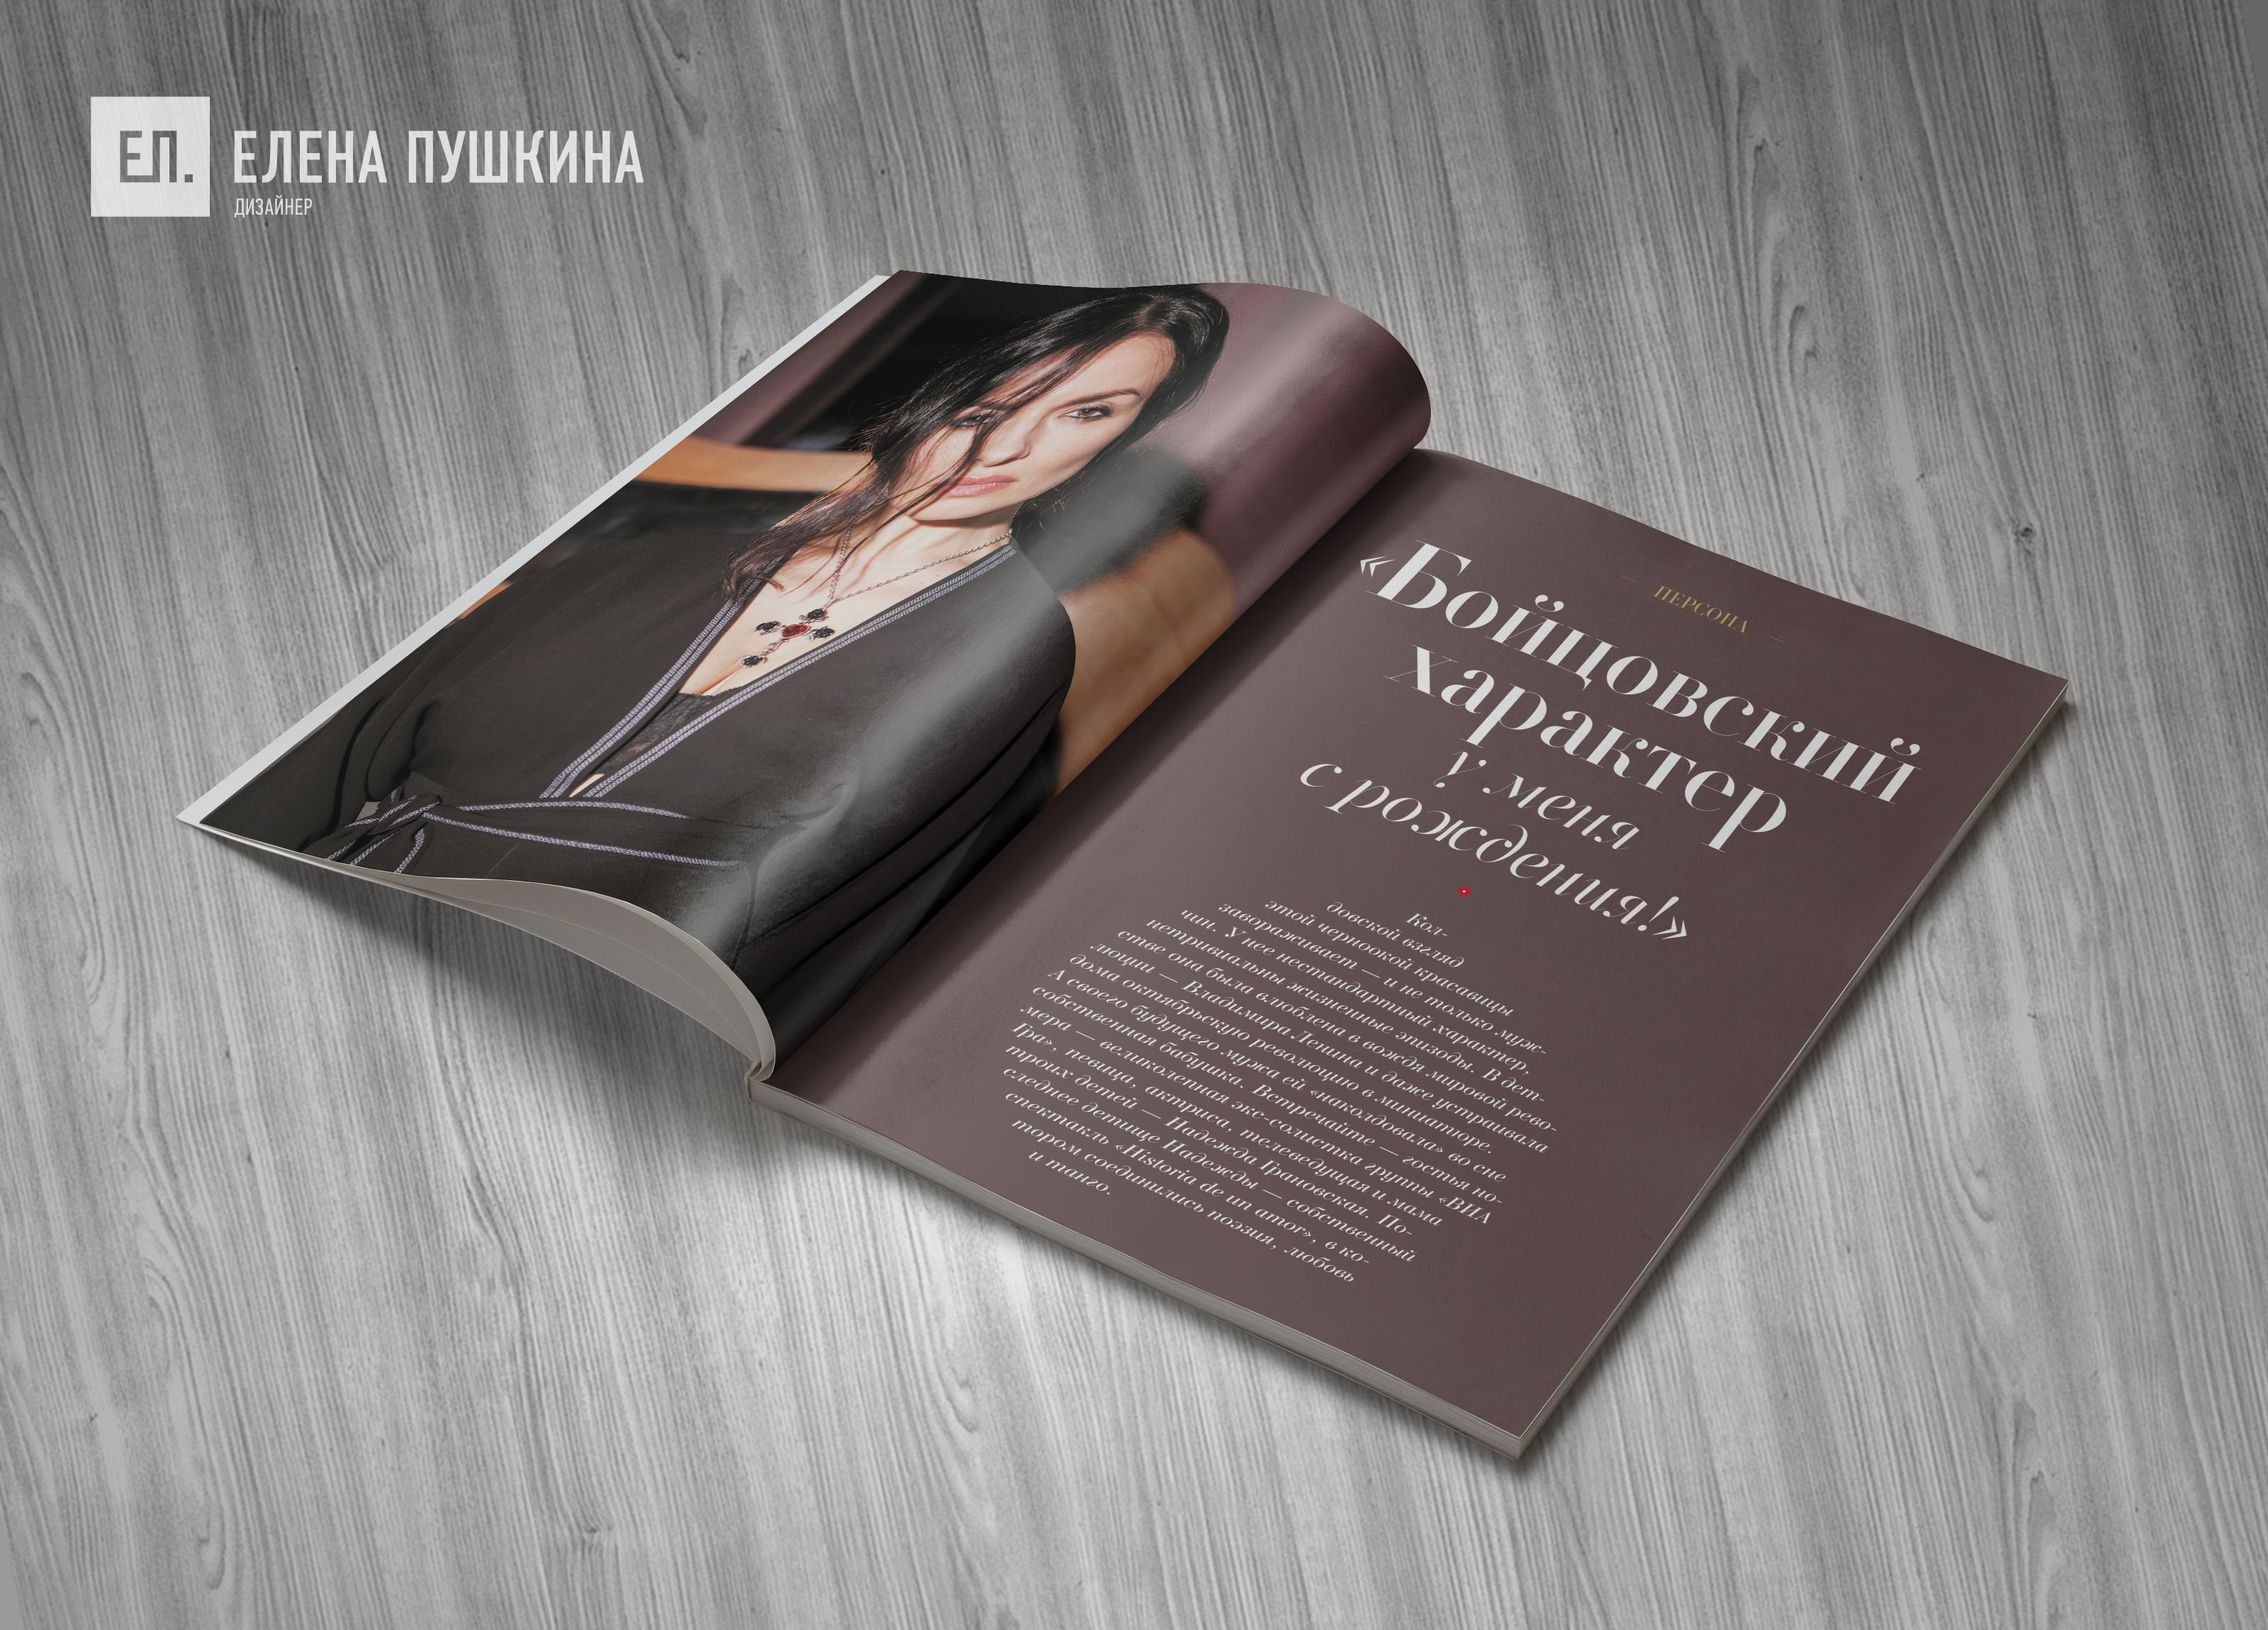 Глянцевый журнал «RUSSIAN BEAUTY» №2 май 2018 — разработка с «нуля» логотипа, обложки, макета и вёрстка журнала Разработка журналов Портфолио